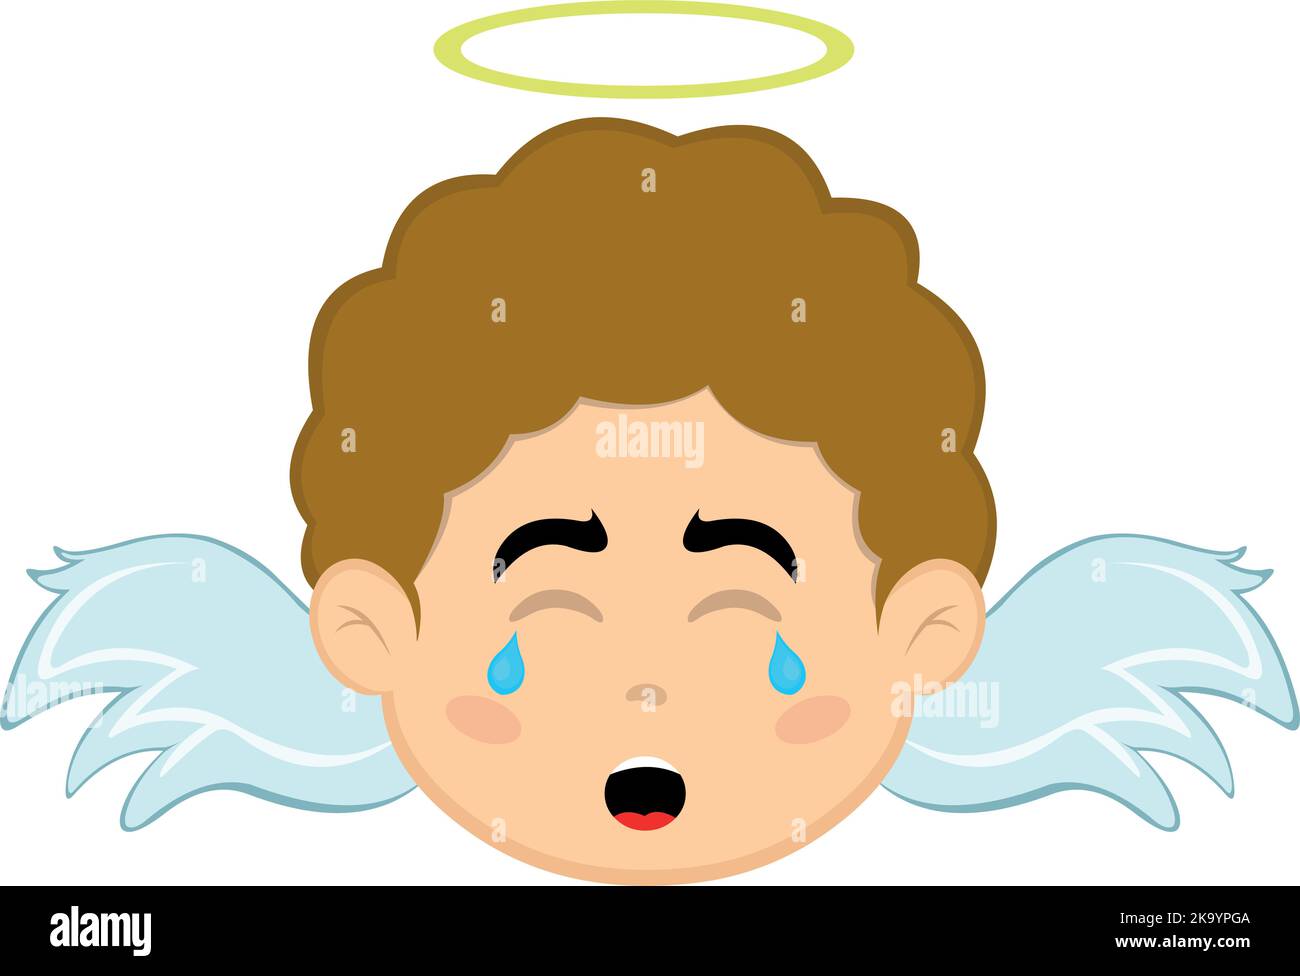 Vektor-Illustration des Gesichts eines Zeichentricksengel Jungen mit einem traurigen Ausdruck, weinen mit Tränen in den Augen Stock Vektor